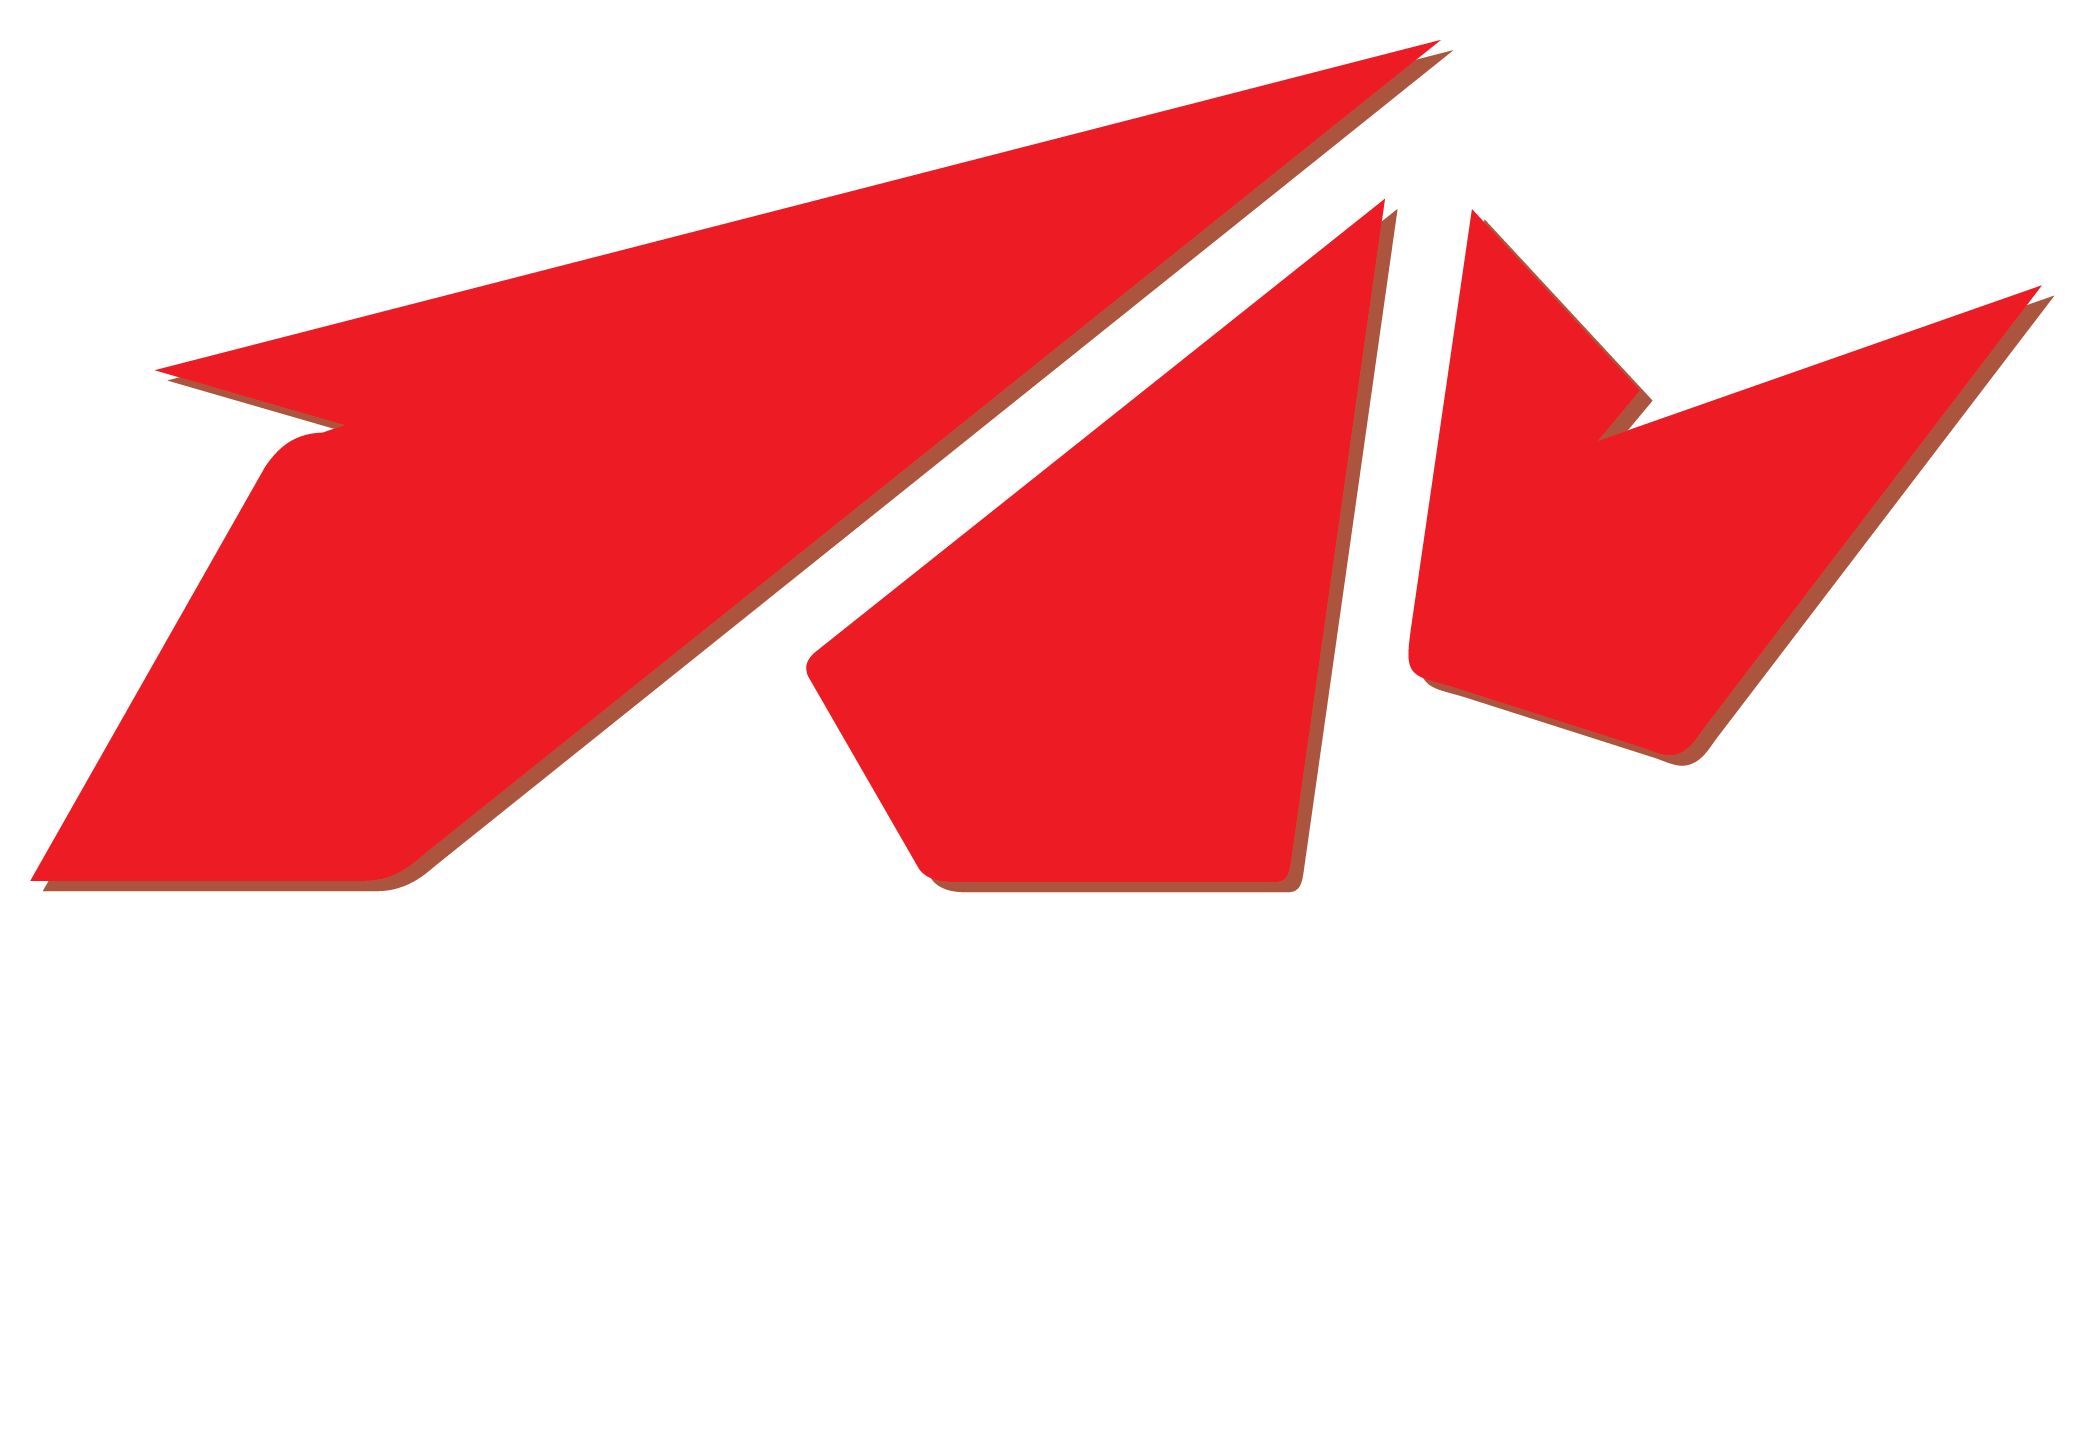 Elitegroup